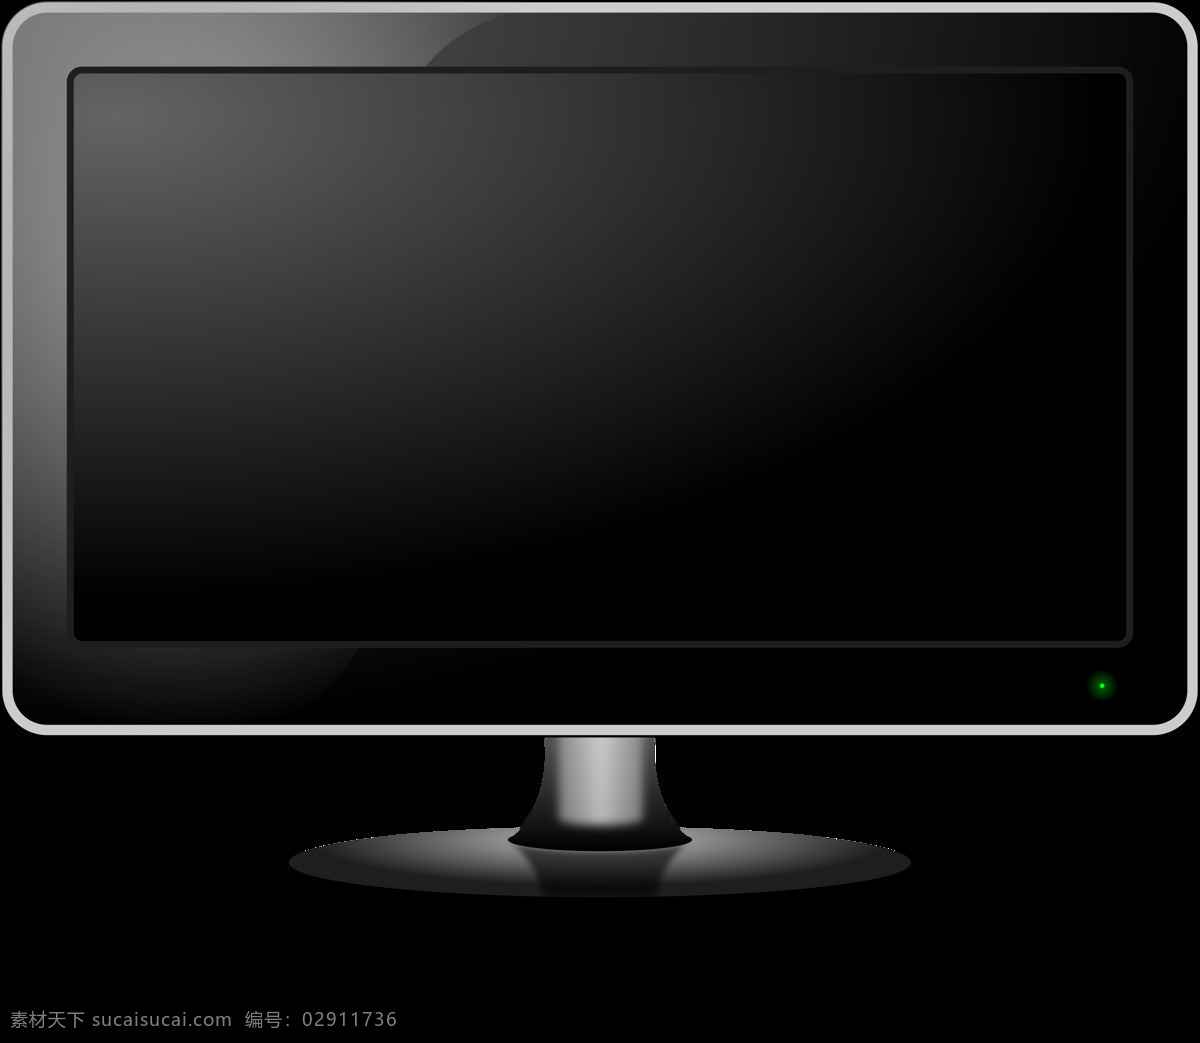 黑 屏 液晶 显示器 免 抠 透明 4k显示器 大屏显示器 2k显示器 显示器图标 苹果显示器 监控显示器 显示器海报 纯平显示器 显示器图片